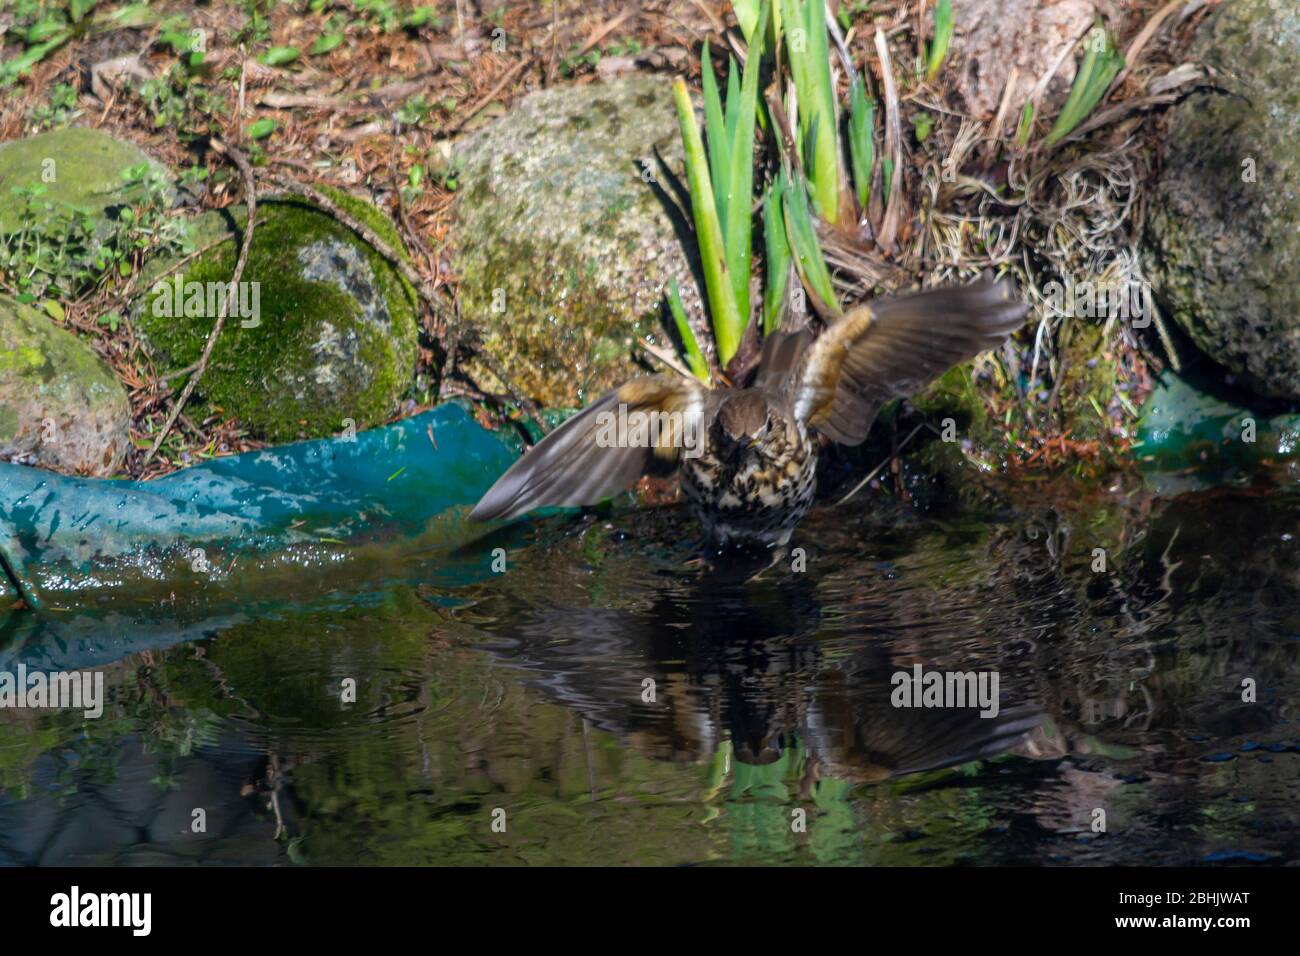 Thrush singer, singer - a species of medium-sized bird from the thrush family, inhabiting Eurasia. Stock Photo